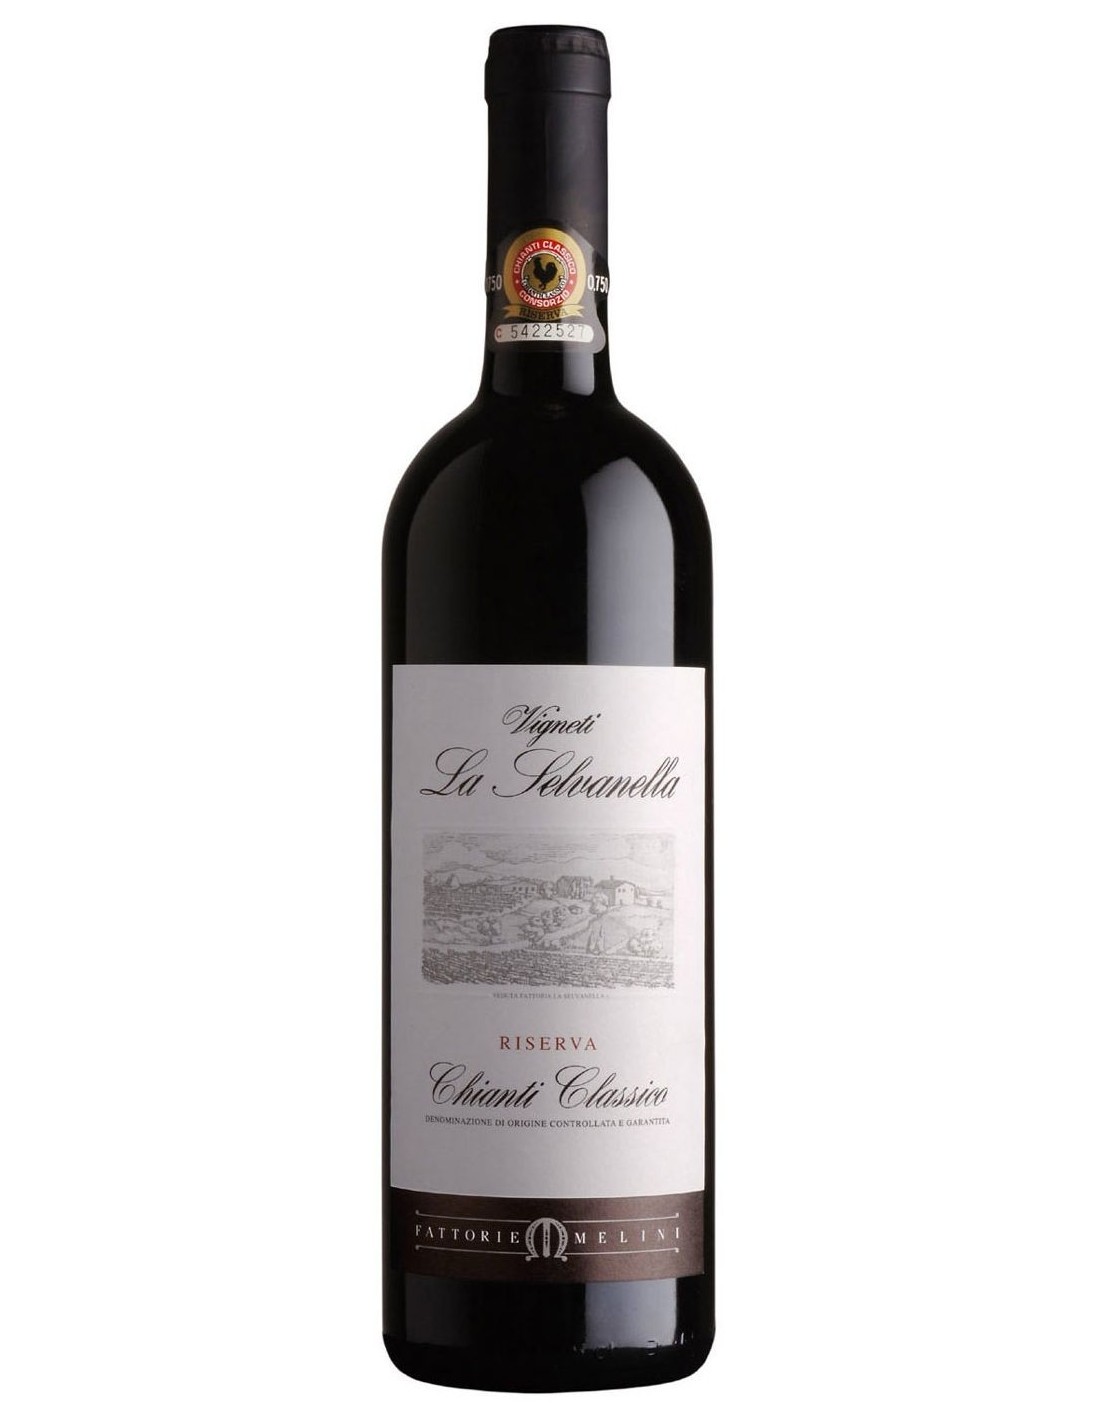 Vin rosu sec, Vigneti La Selvanella Chianti Classico Riserva, 14.5% alc., 0.75L, Italia alcooldiscount.ro